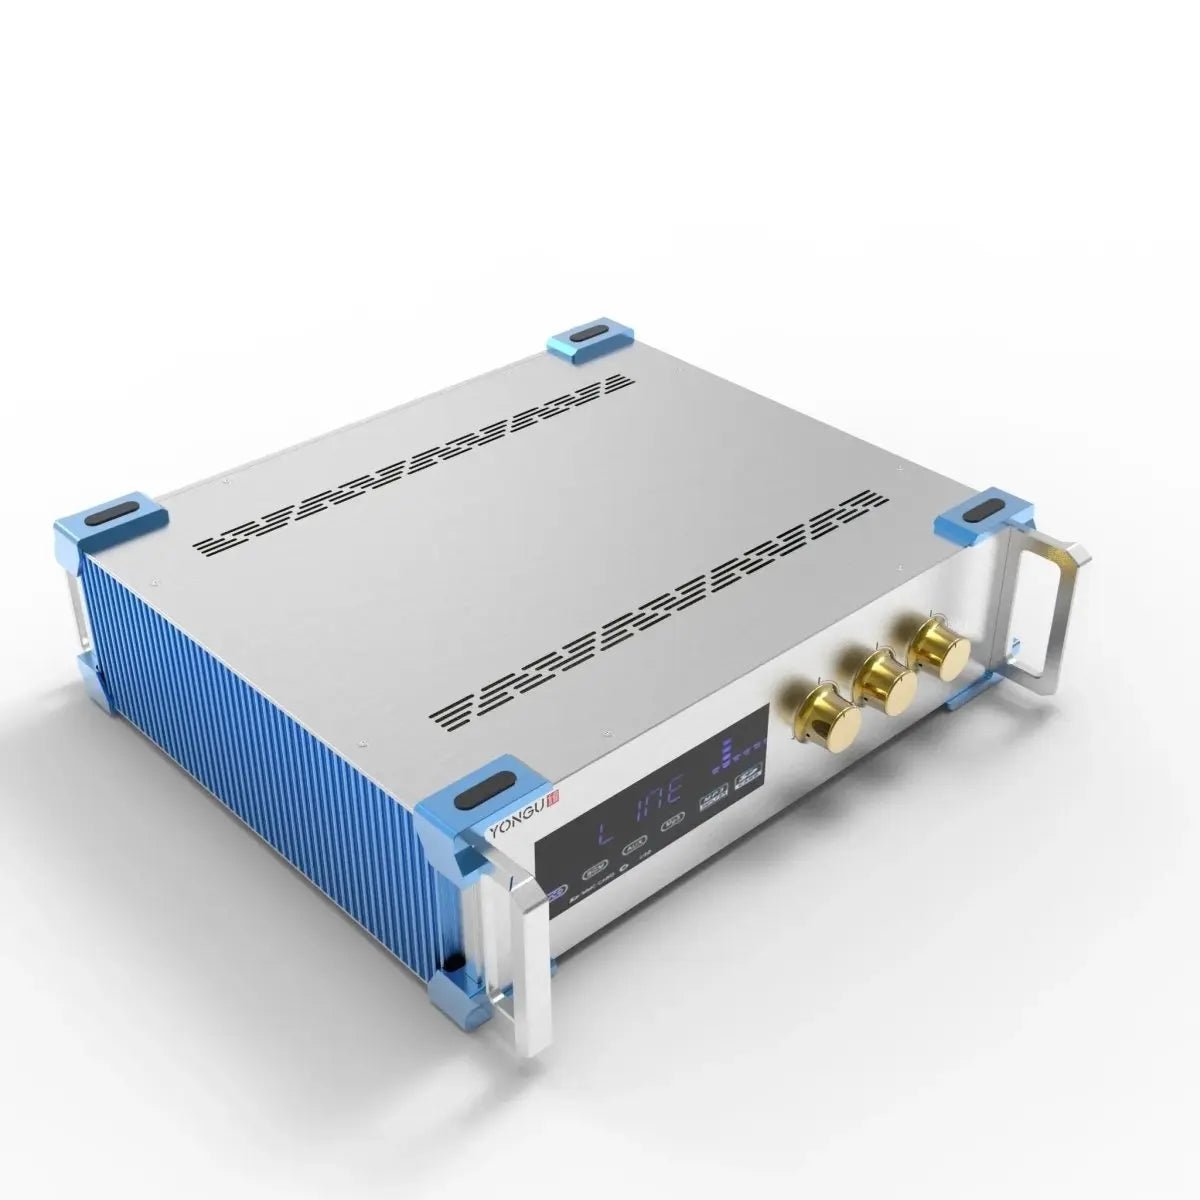 Electronic Project 115H Box-A10 - Yongu Case